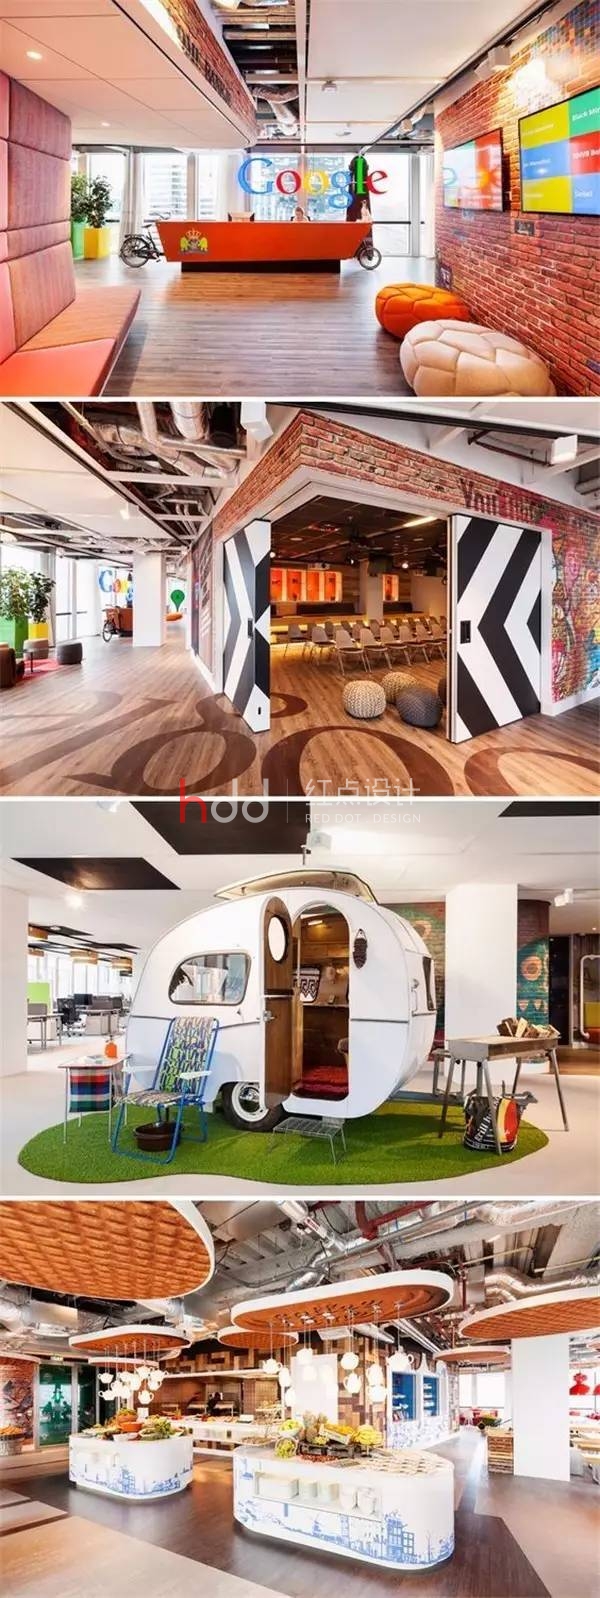 阿姆斯特丹的Google办公空间.jpg